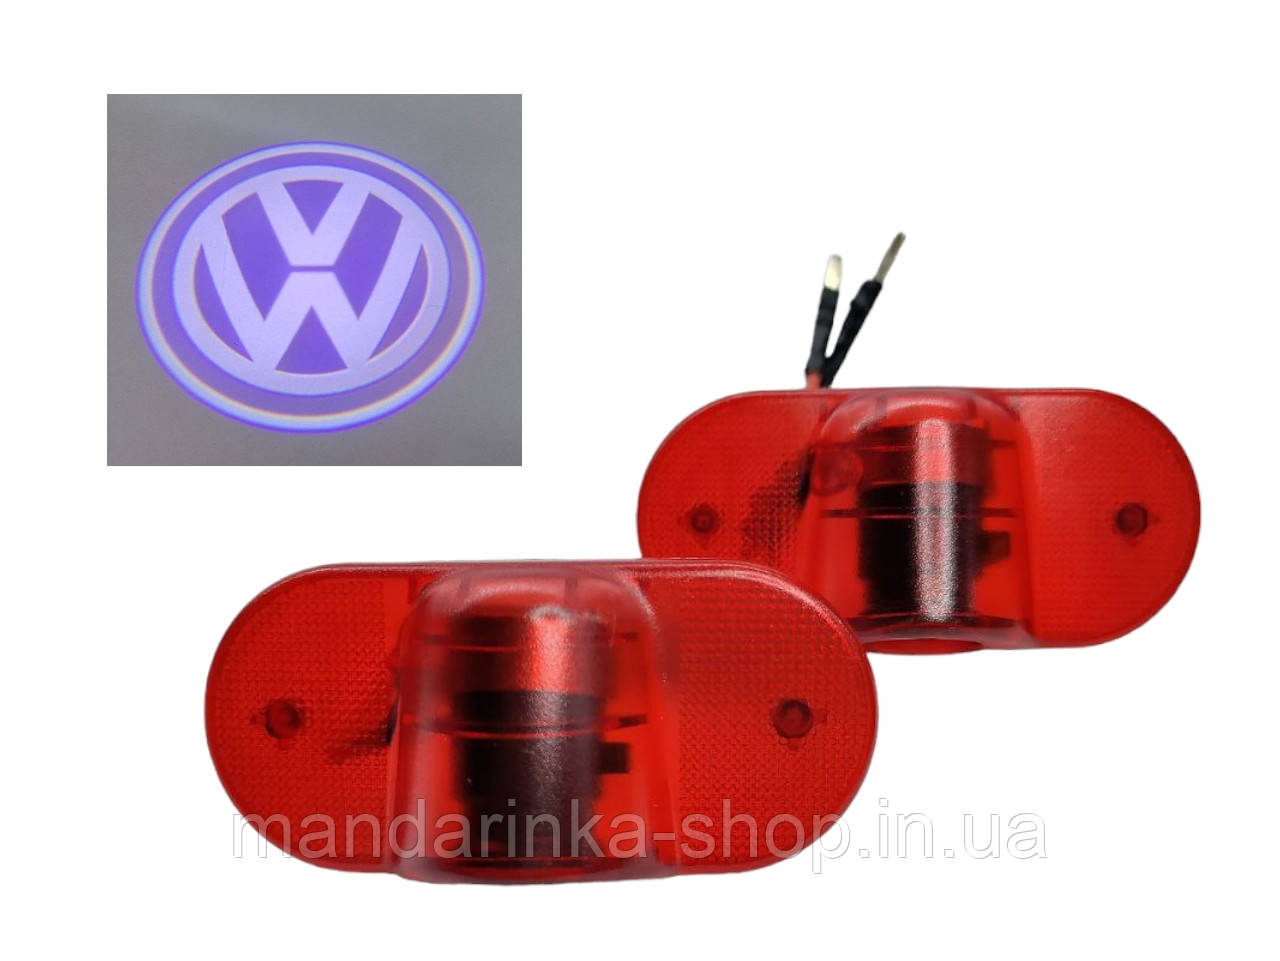 Світлодіодне штатне підсвічування на дверях автомобіля з логотипом Volkswagen,Golf 4  Beetle  Touran  Lavida